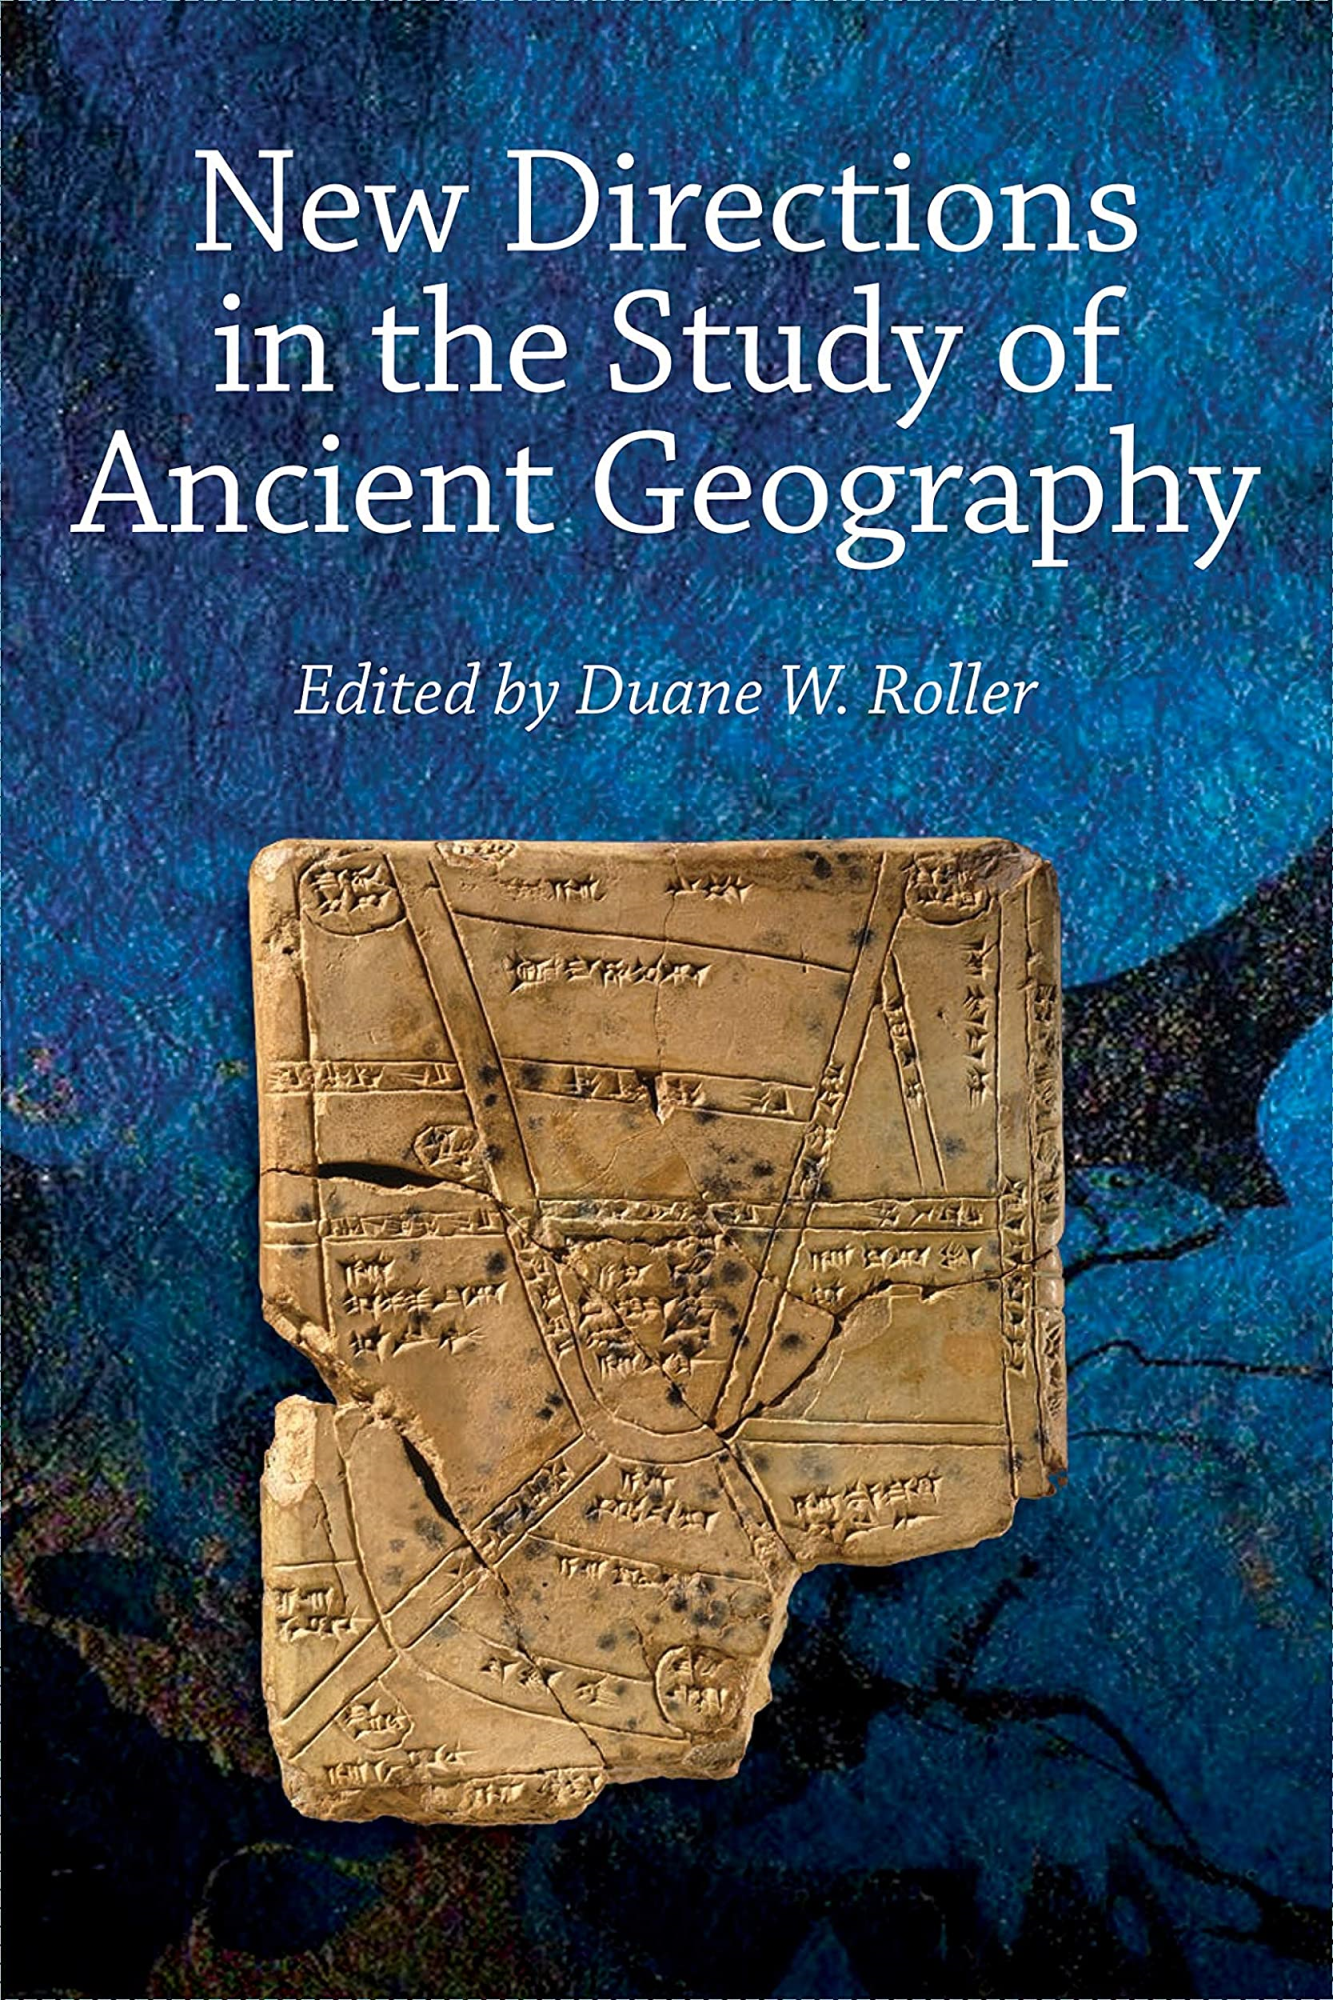 Libri Roller - New Directions Study Ancient Geographypb NUOVO SIGILLATO, EDIZIONE DEL 28/07/2020 SUBITO DISPONIBILE